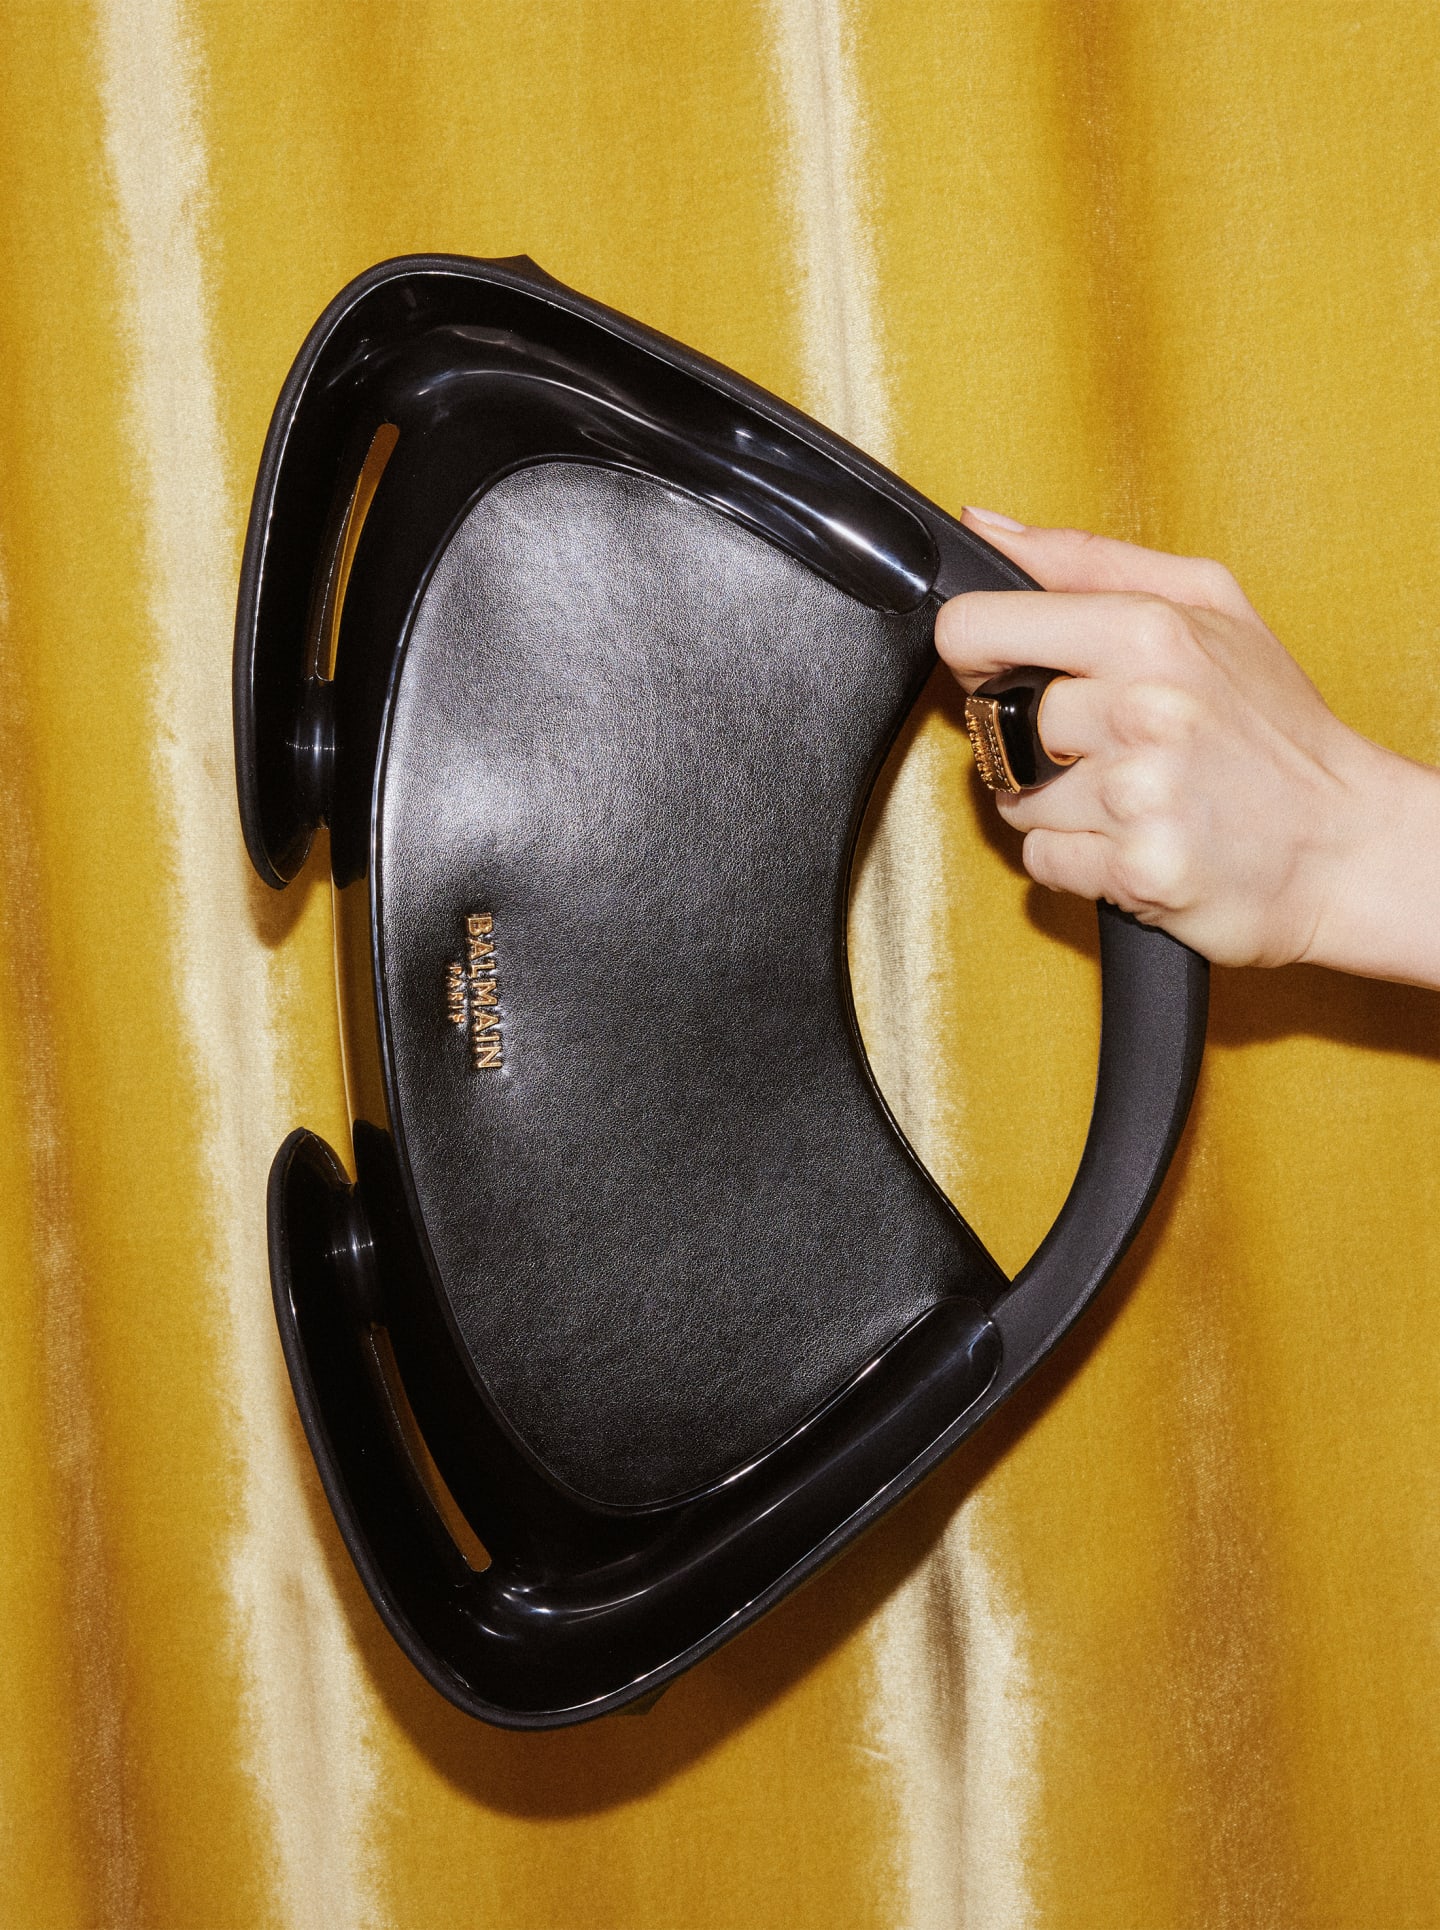 Buy Beige Handbags for Women by LaFille Online | Ajio.com